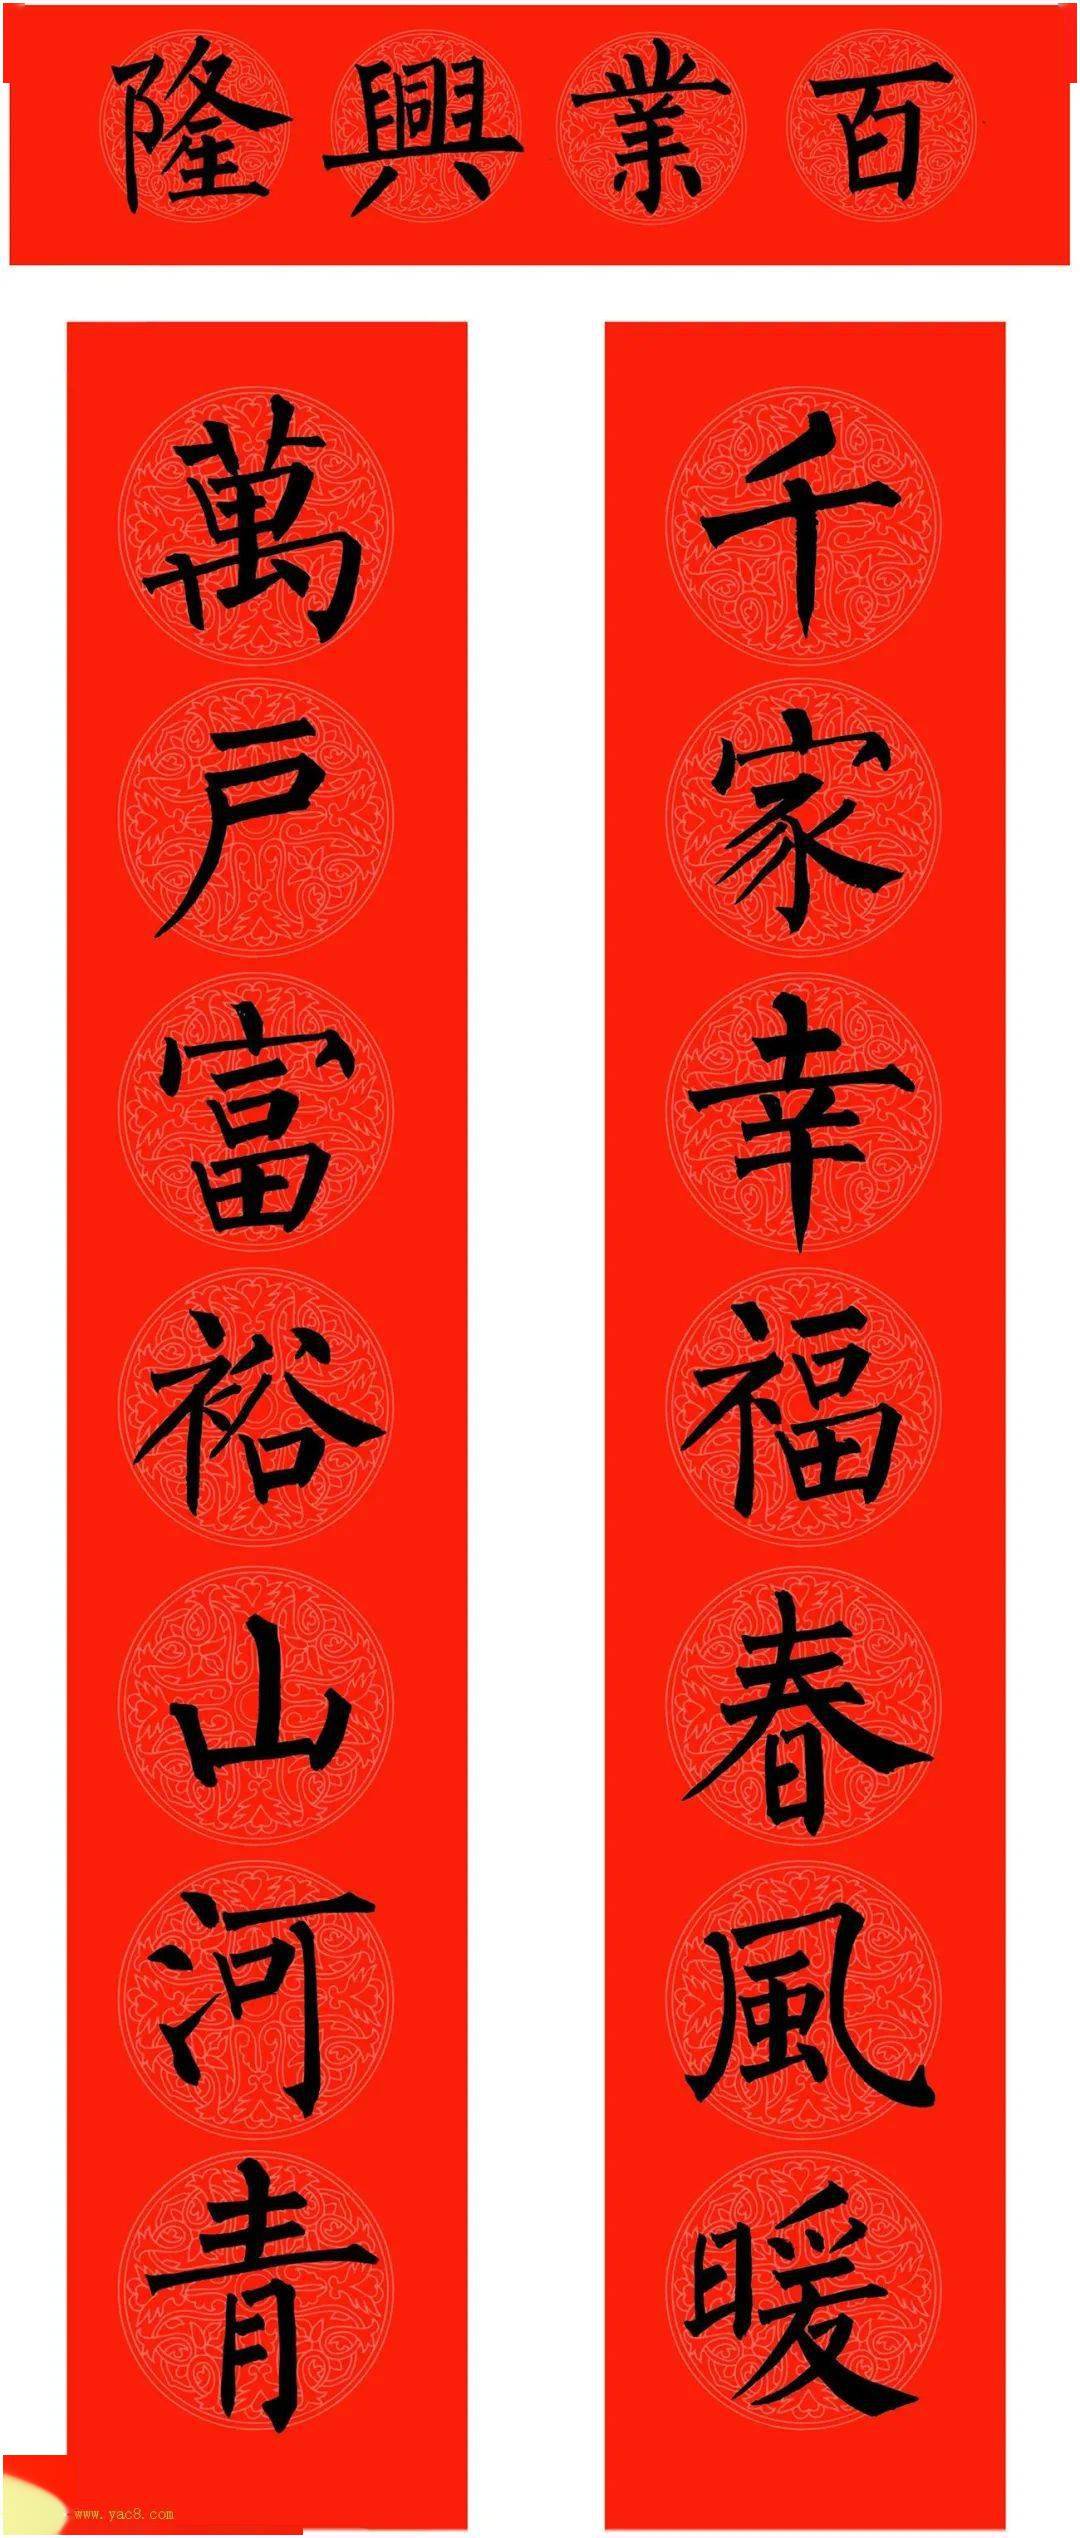 二零二一年春节将近,范笑歌先生书写了三副春联,这三幅春联分别是楷书